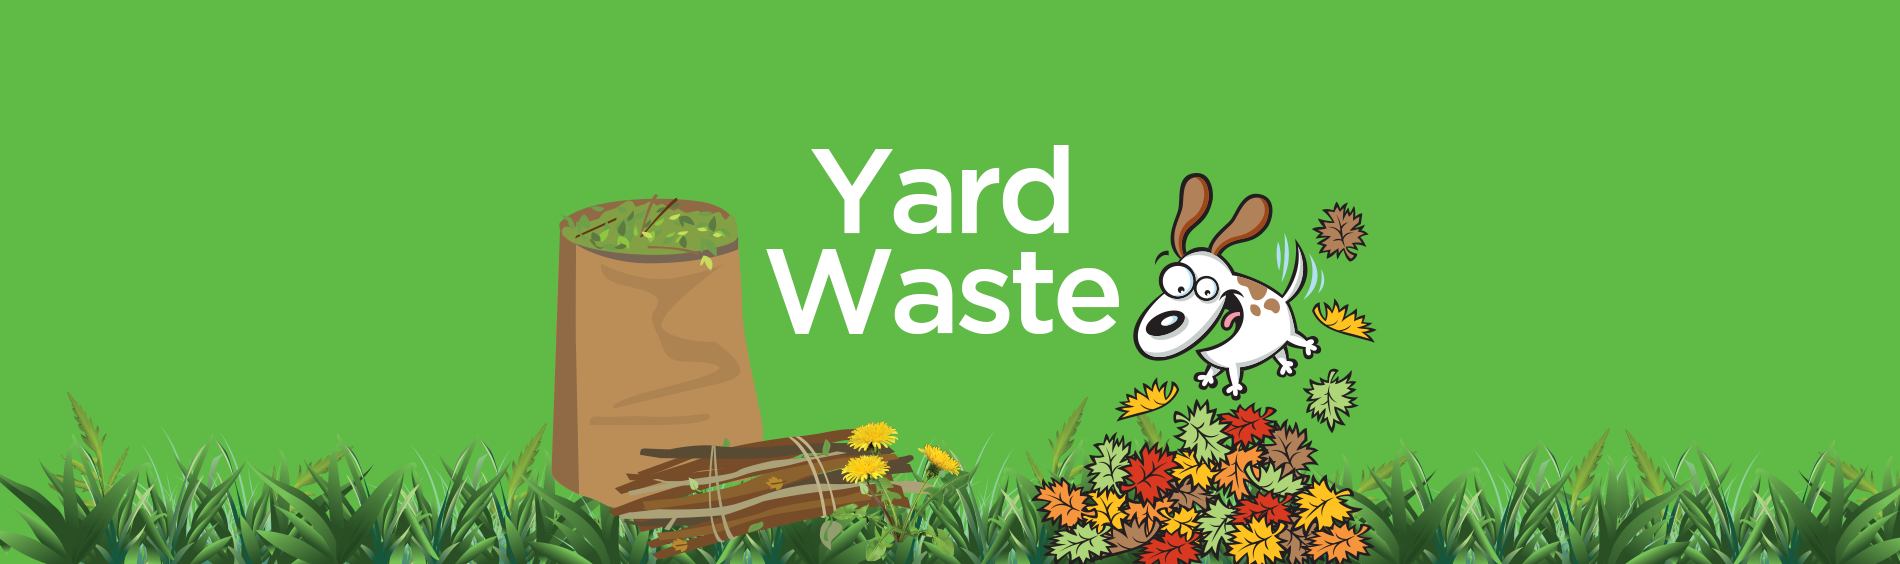 Brantford Yard Waste Program